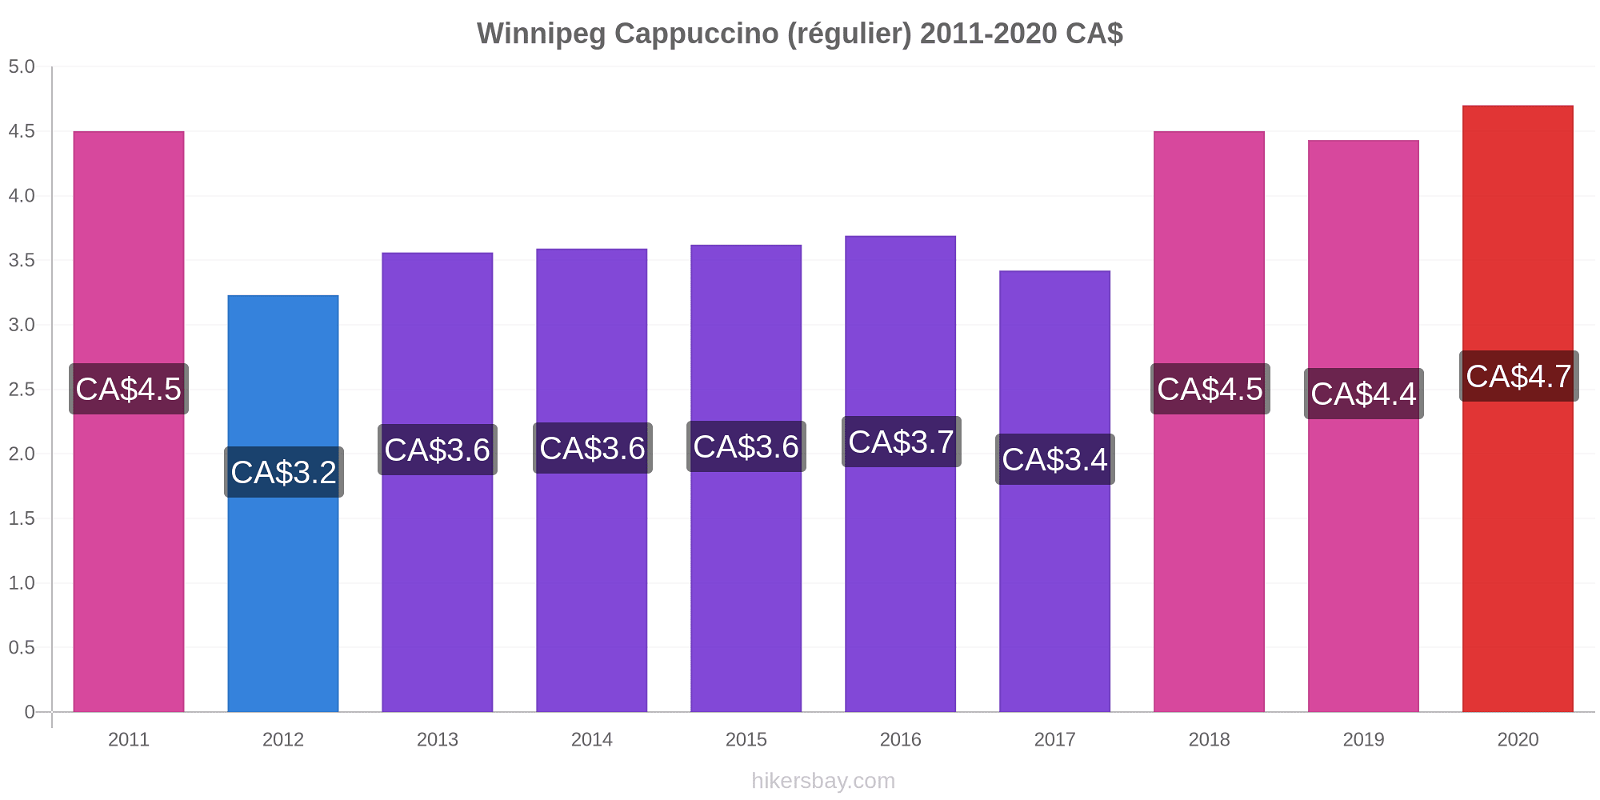 Winnipeg changements de prix Cappuccino (régulier) hikersbay.com